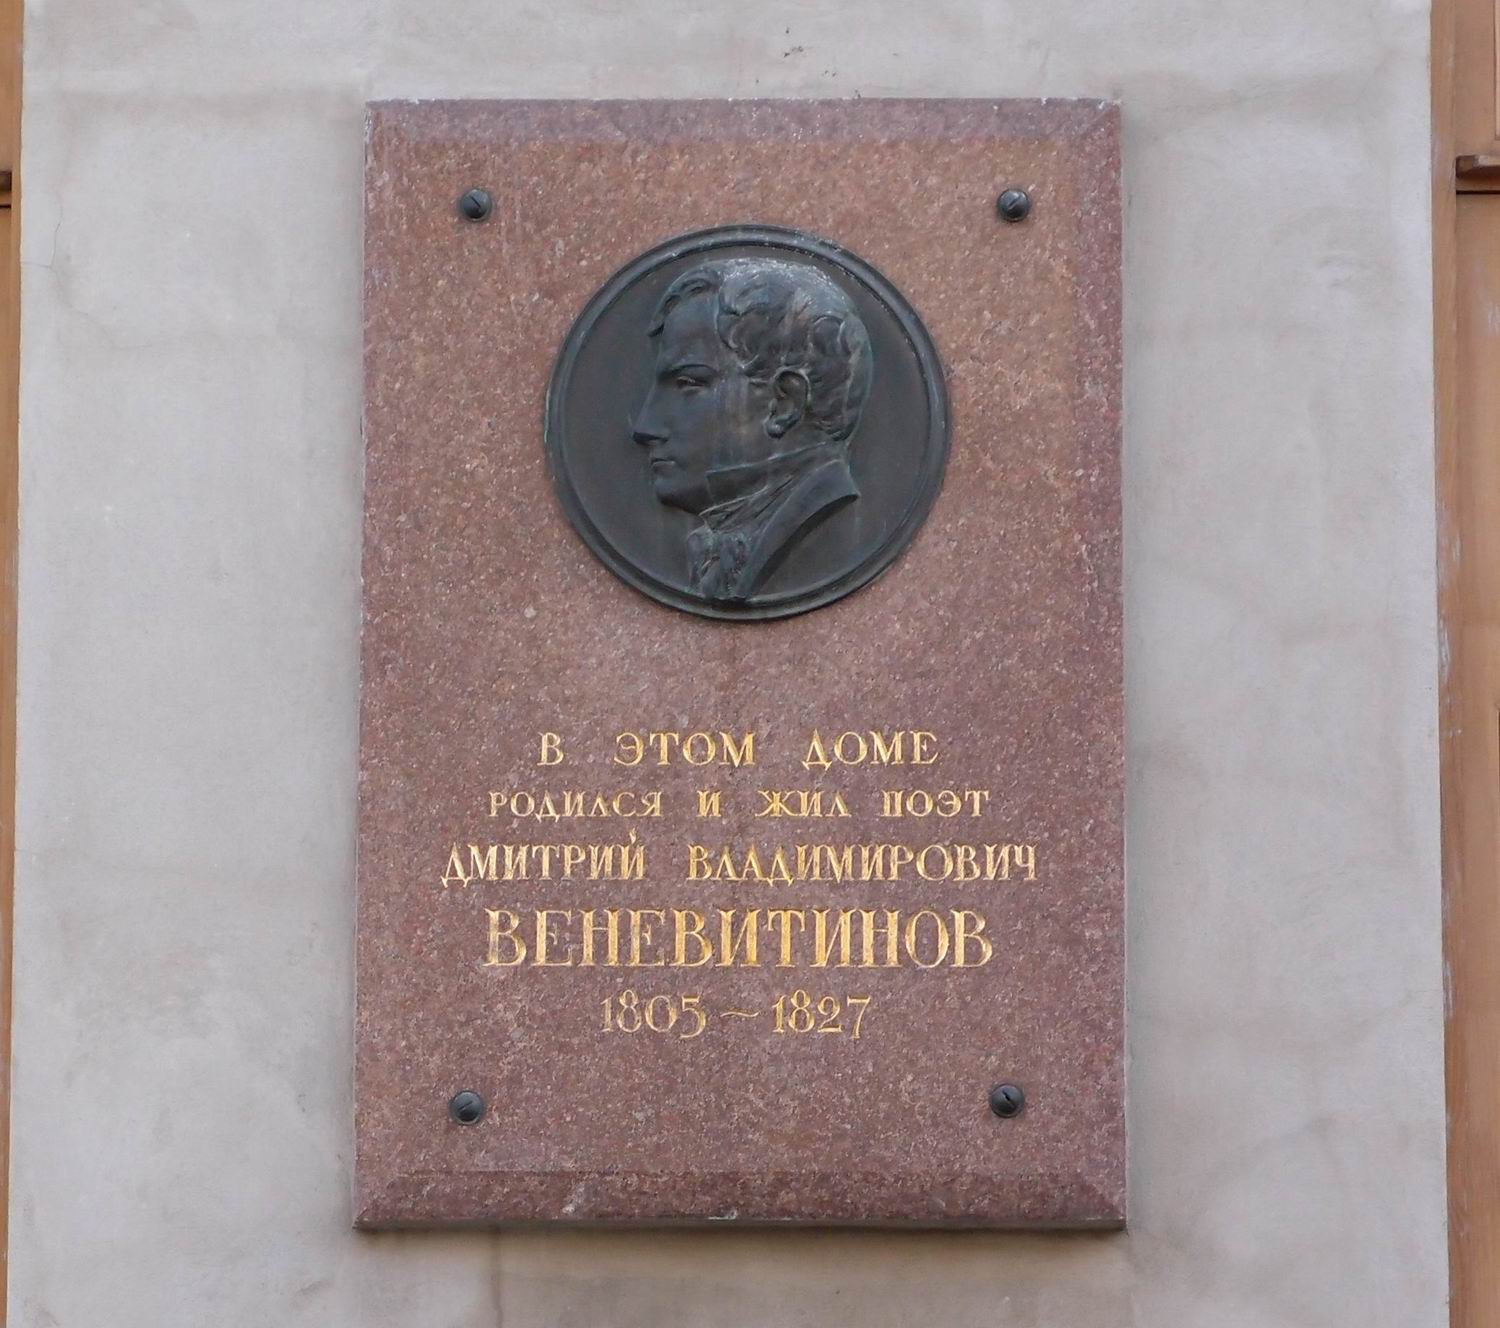 Мемориальная доска Веневитинову Д.В. (1805–1827), в Кривоколенном переулке, дом 4.